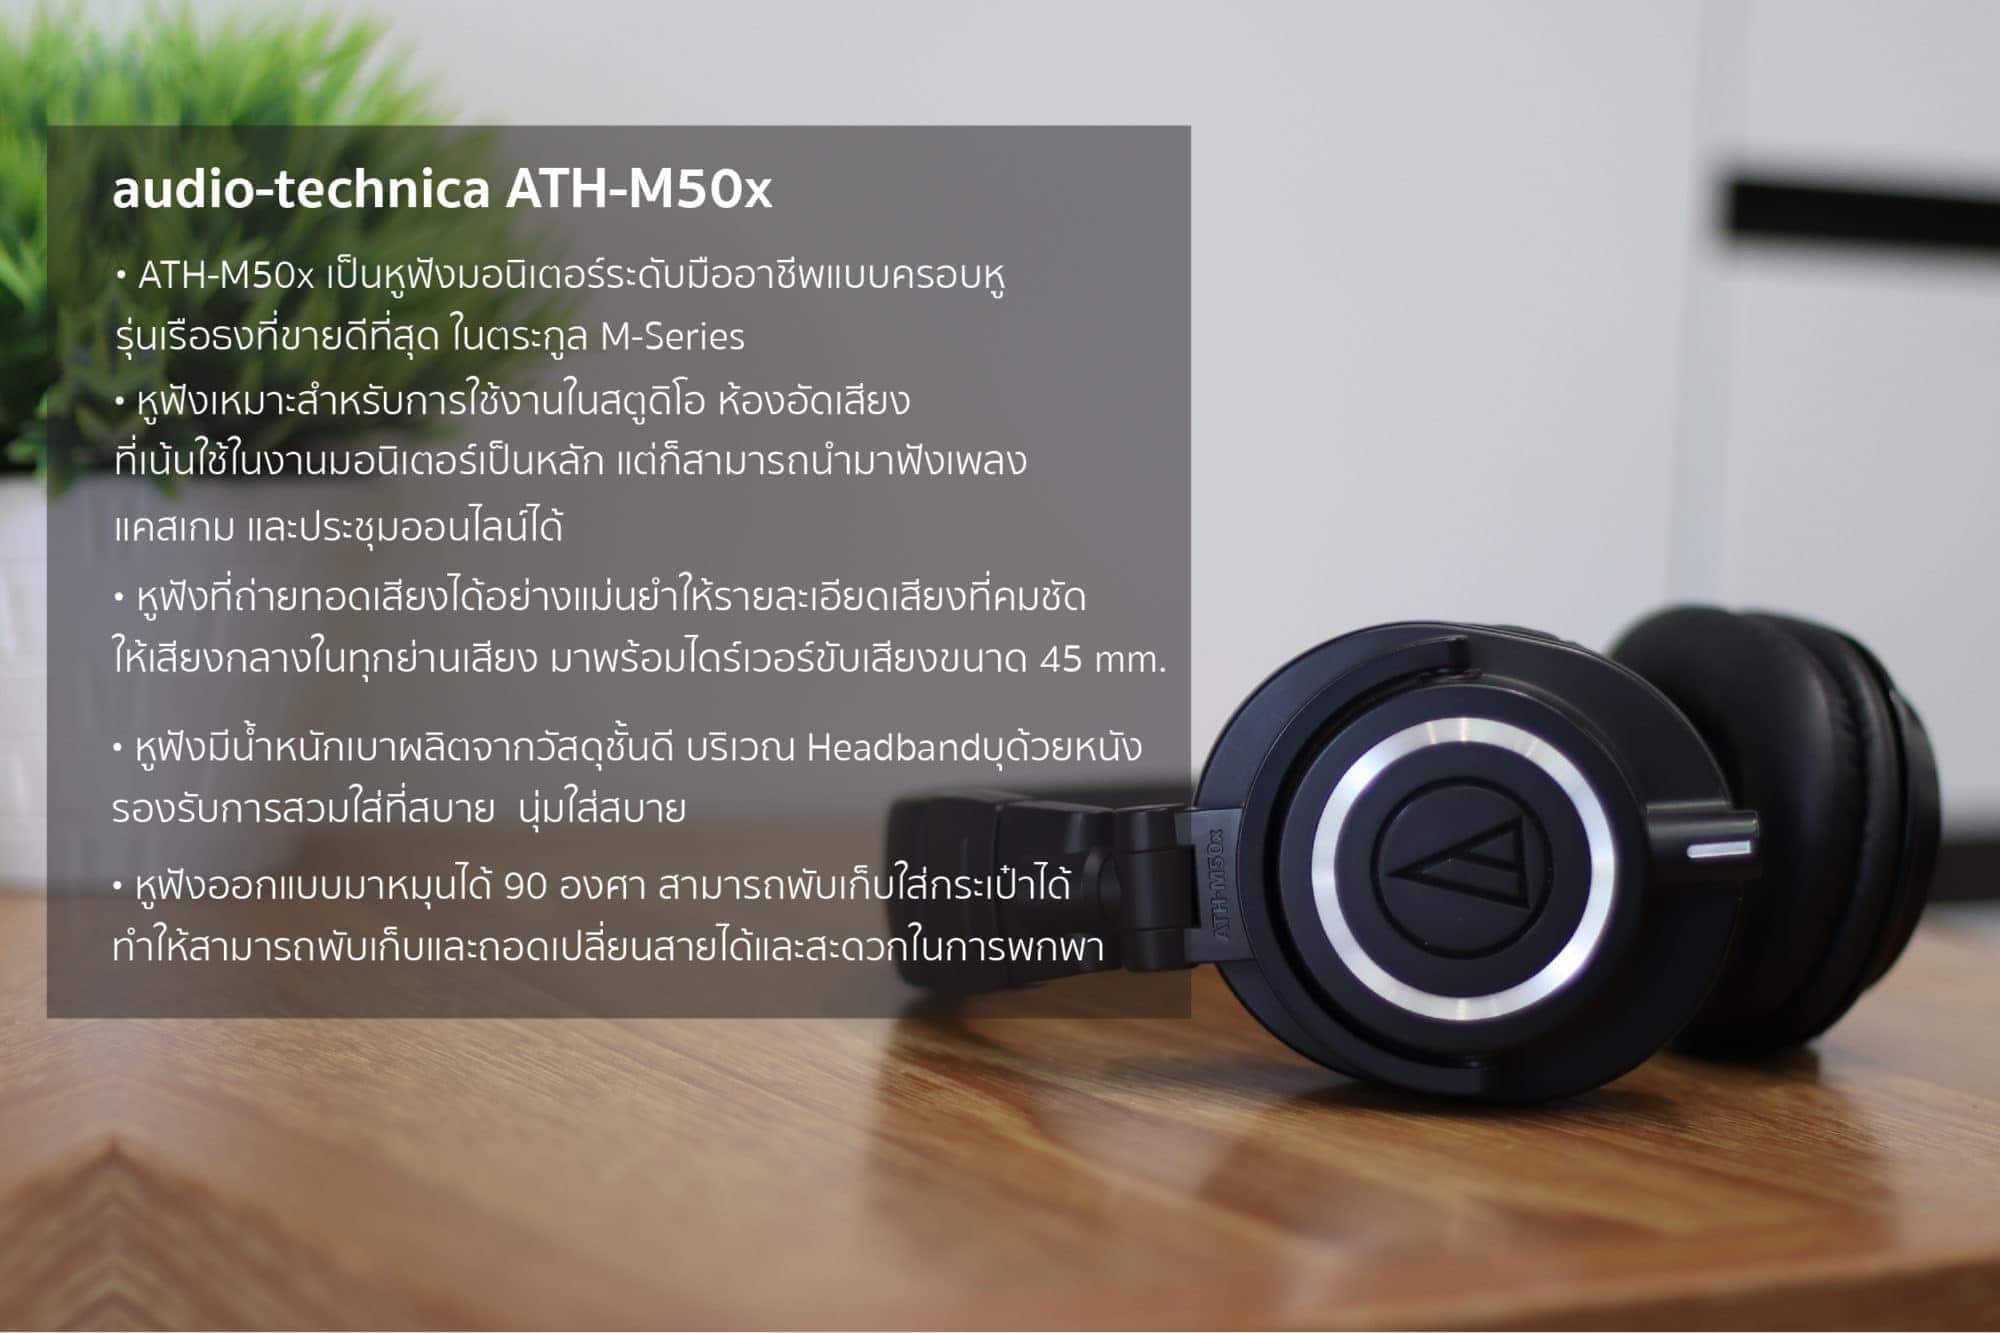 อาร์ทีบีฯ ส่ง M50x Creator Pack พร้อมไมโครโฟน Audio-Technica ATR2500X-USB เอาใจสาย Content Creator 3